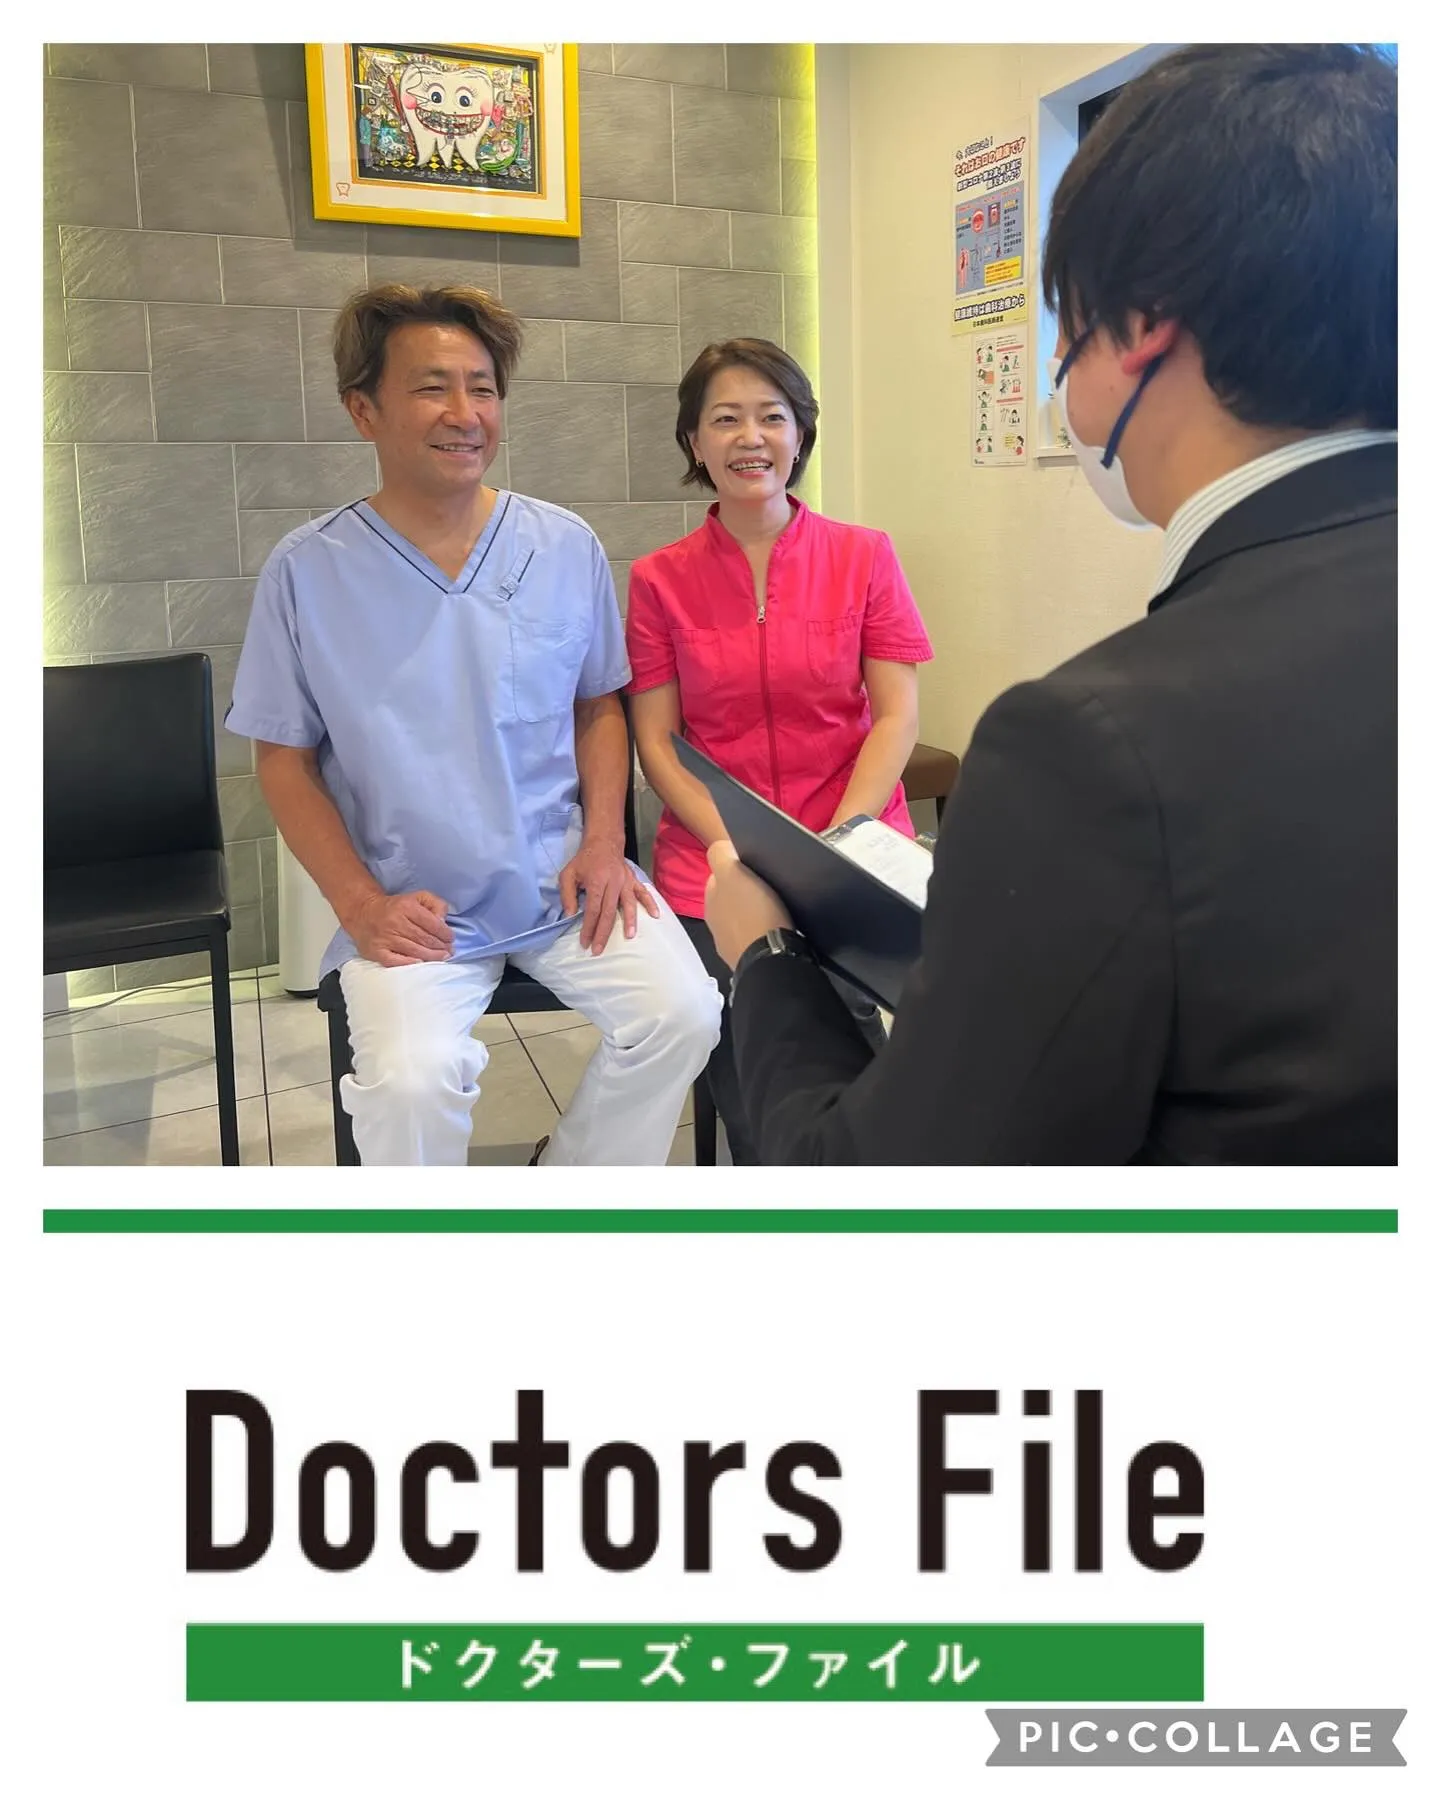 doctors file さんからインタビューを受けました。